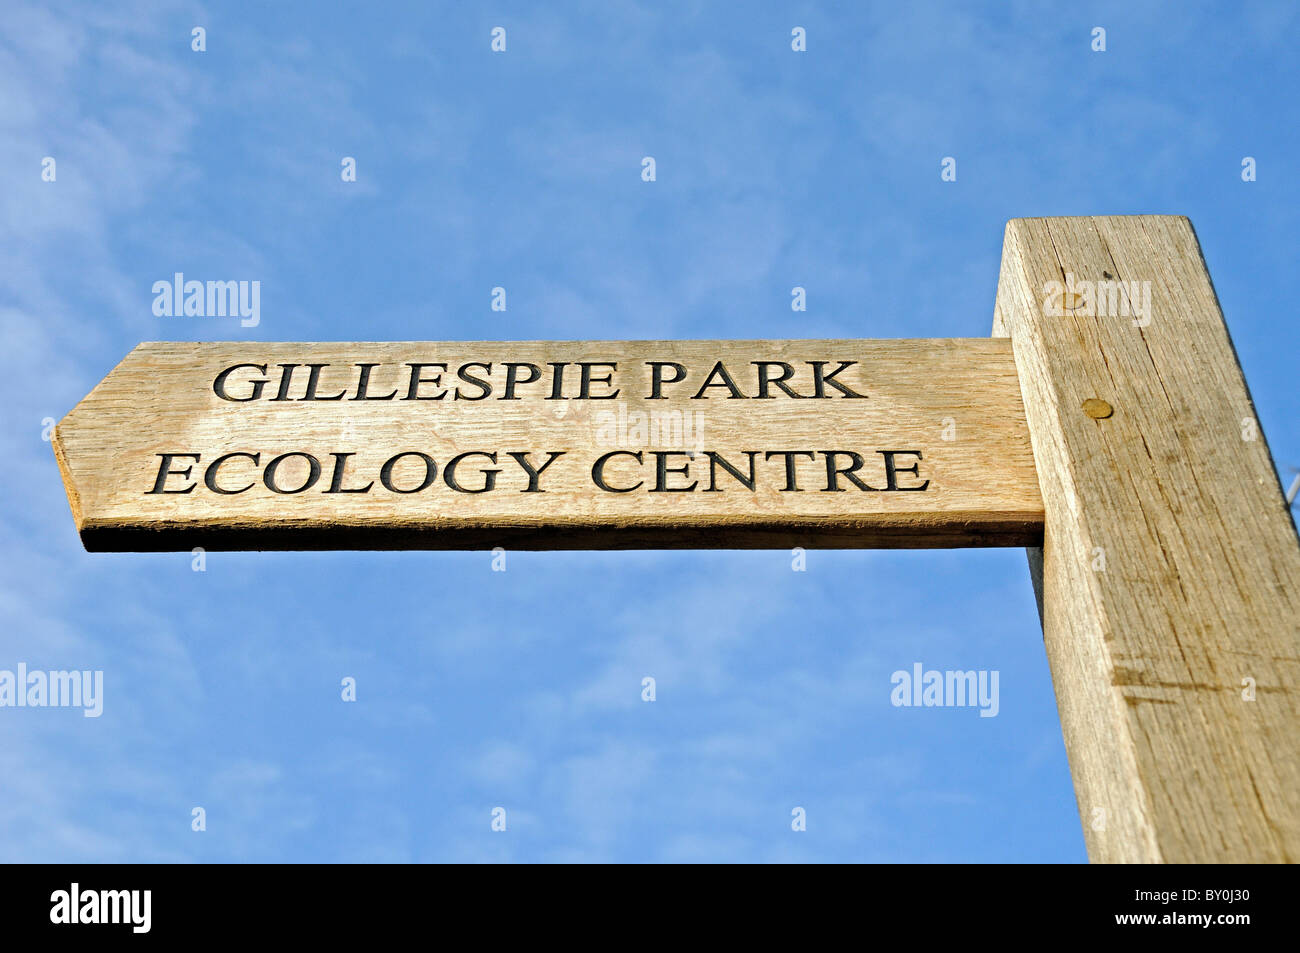 Fingerpost dirigere a Gillespie Park e il quartiere di Islington Ecology Centre, Highbury, London, England, Regno Unito Foto Stock